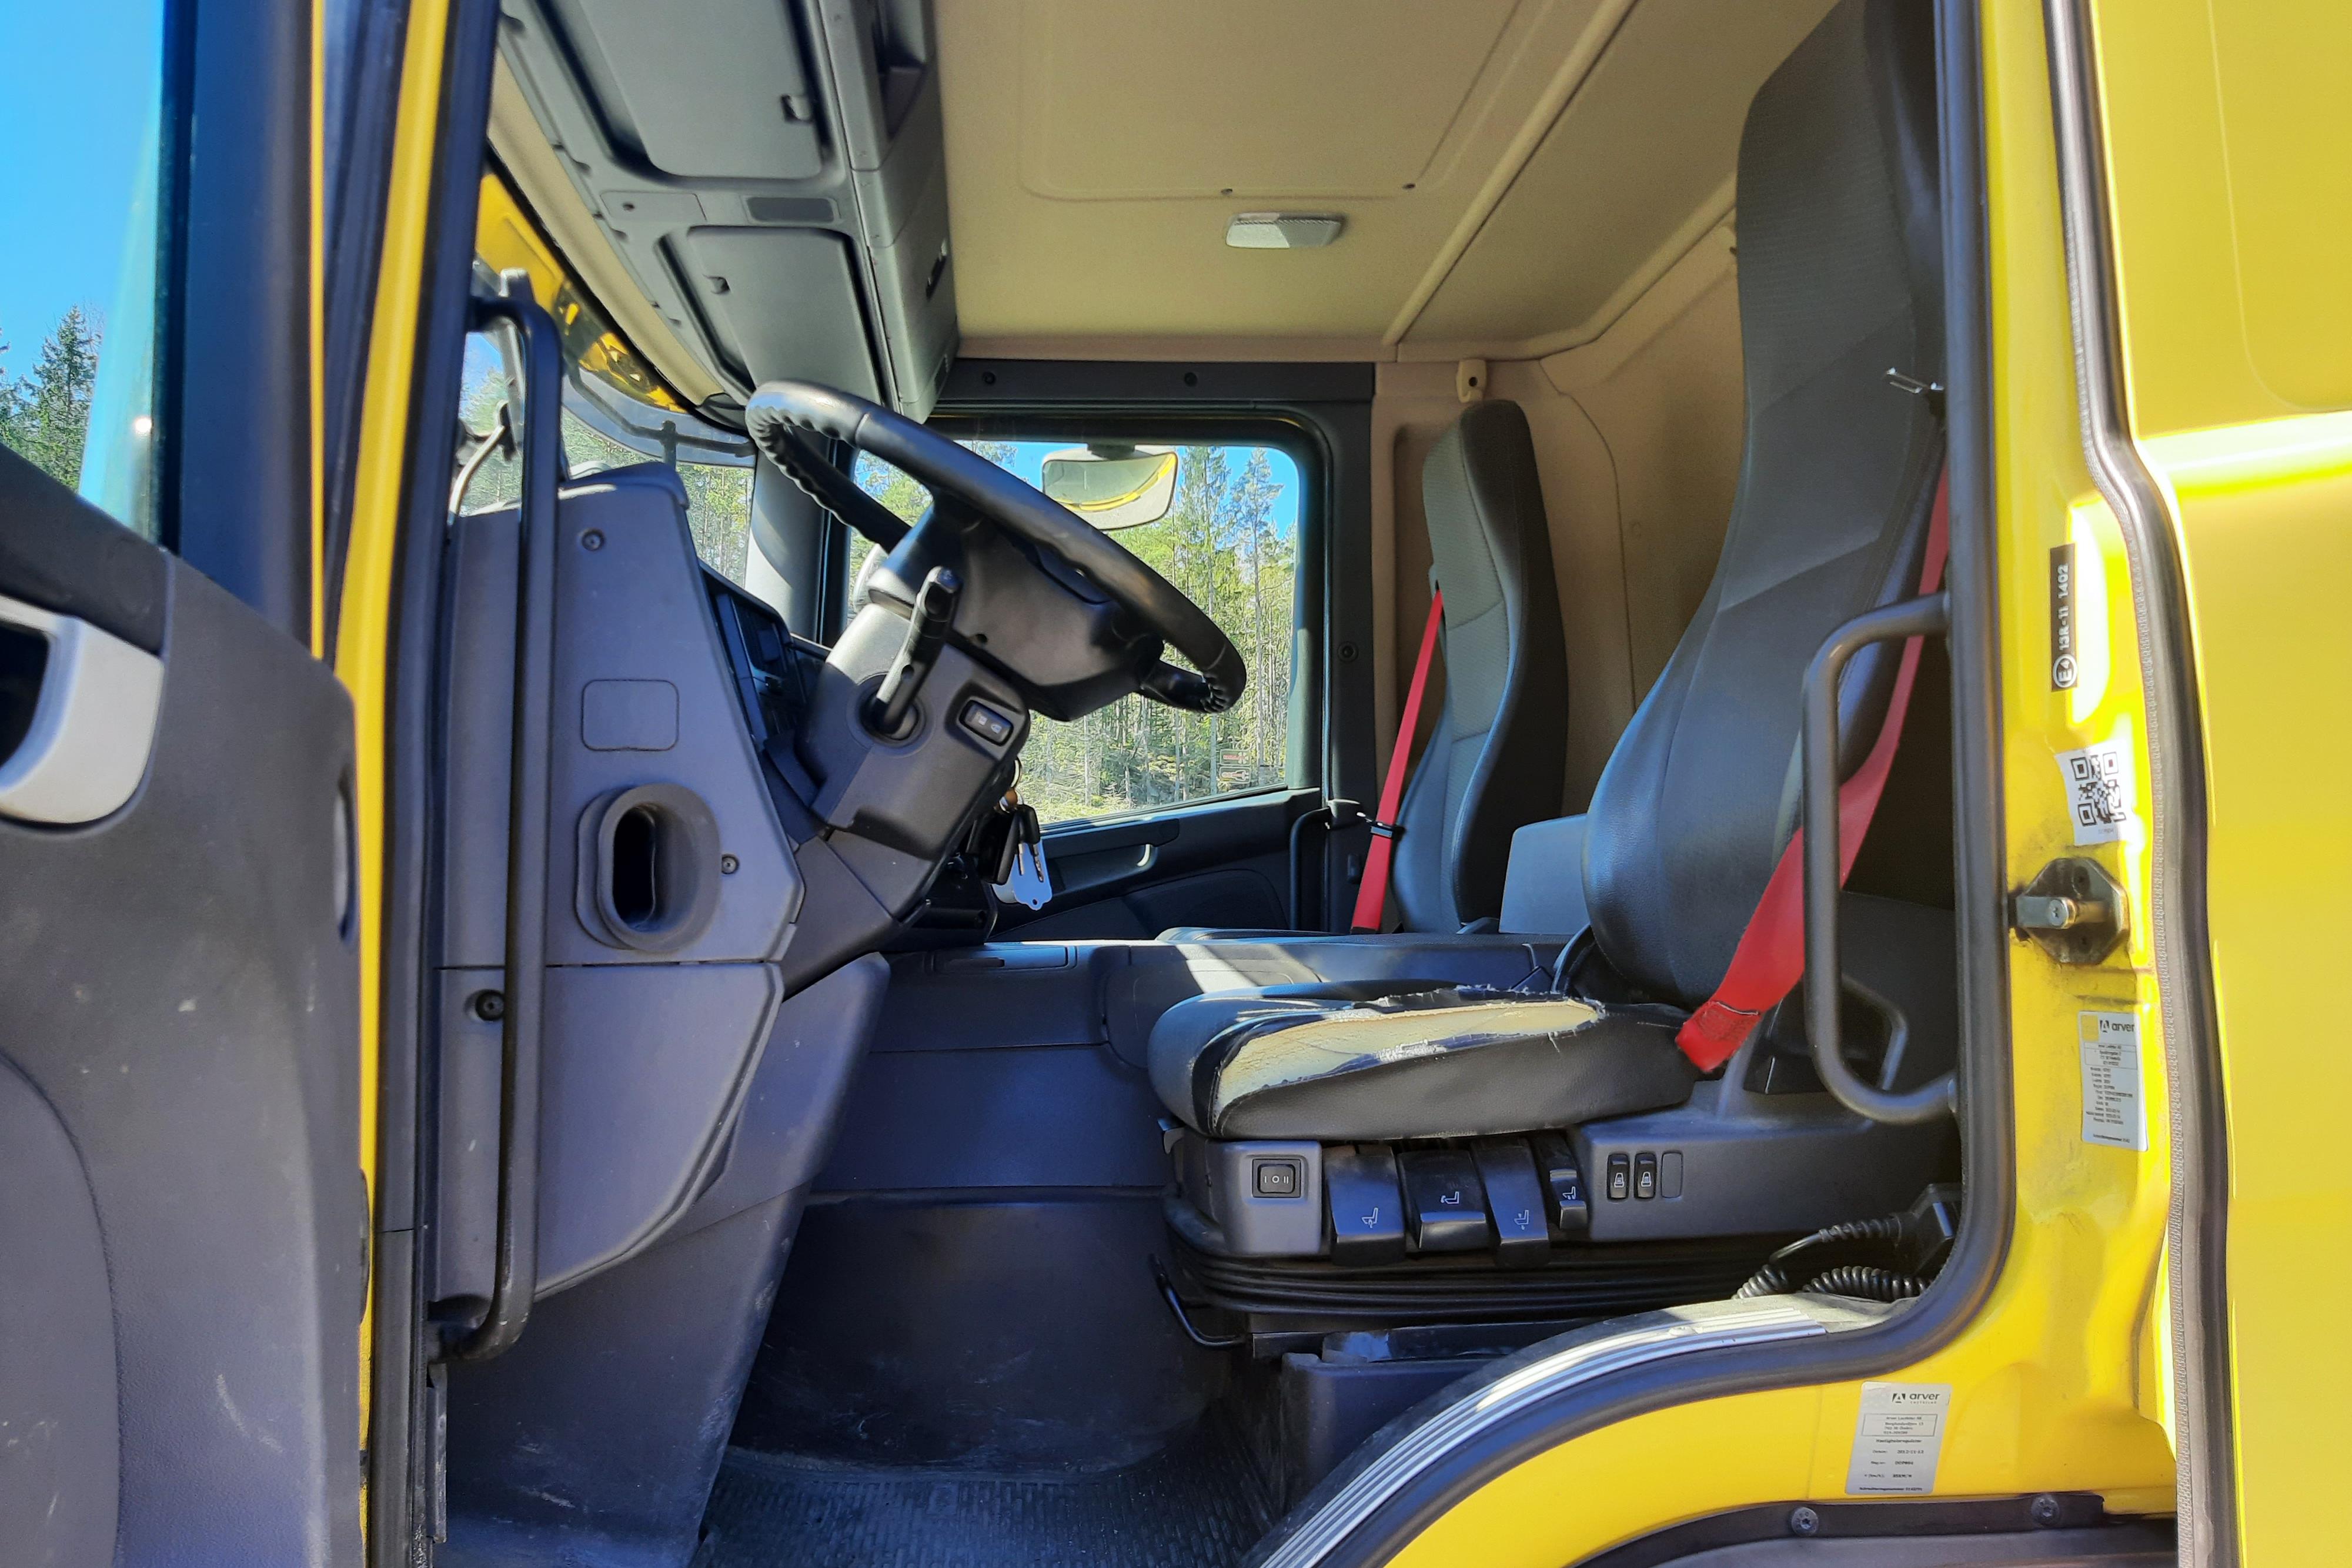 Scania P230 - 505 562 km - Automatic - yellow - 2013